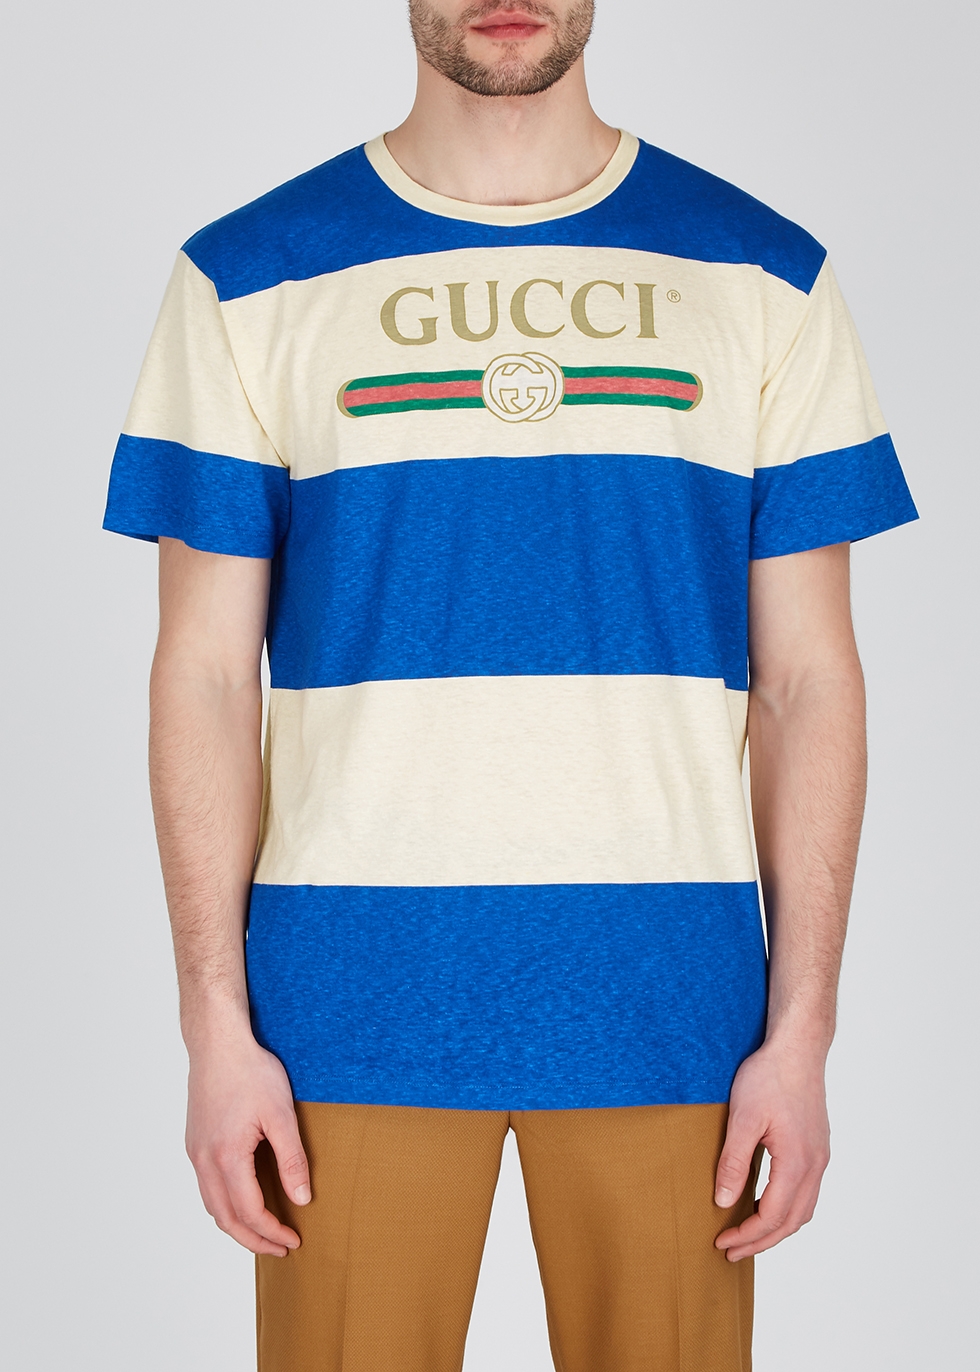 gucci stripe tshirt